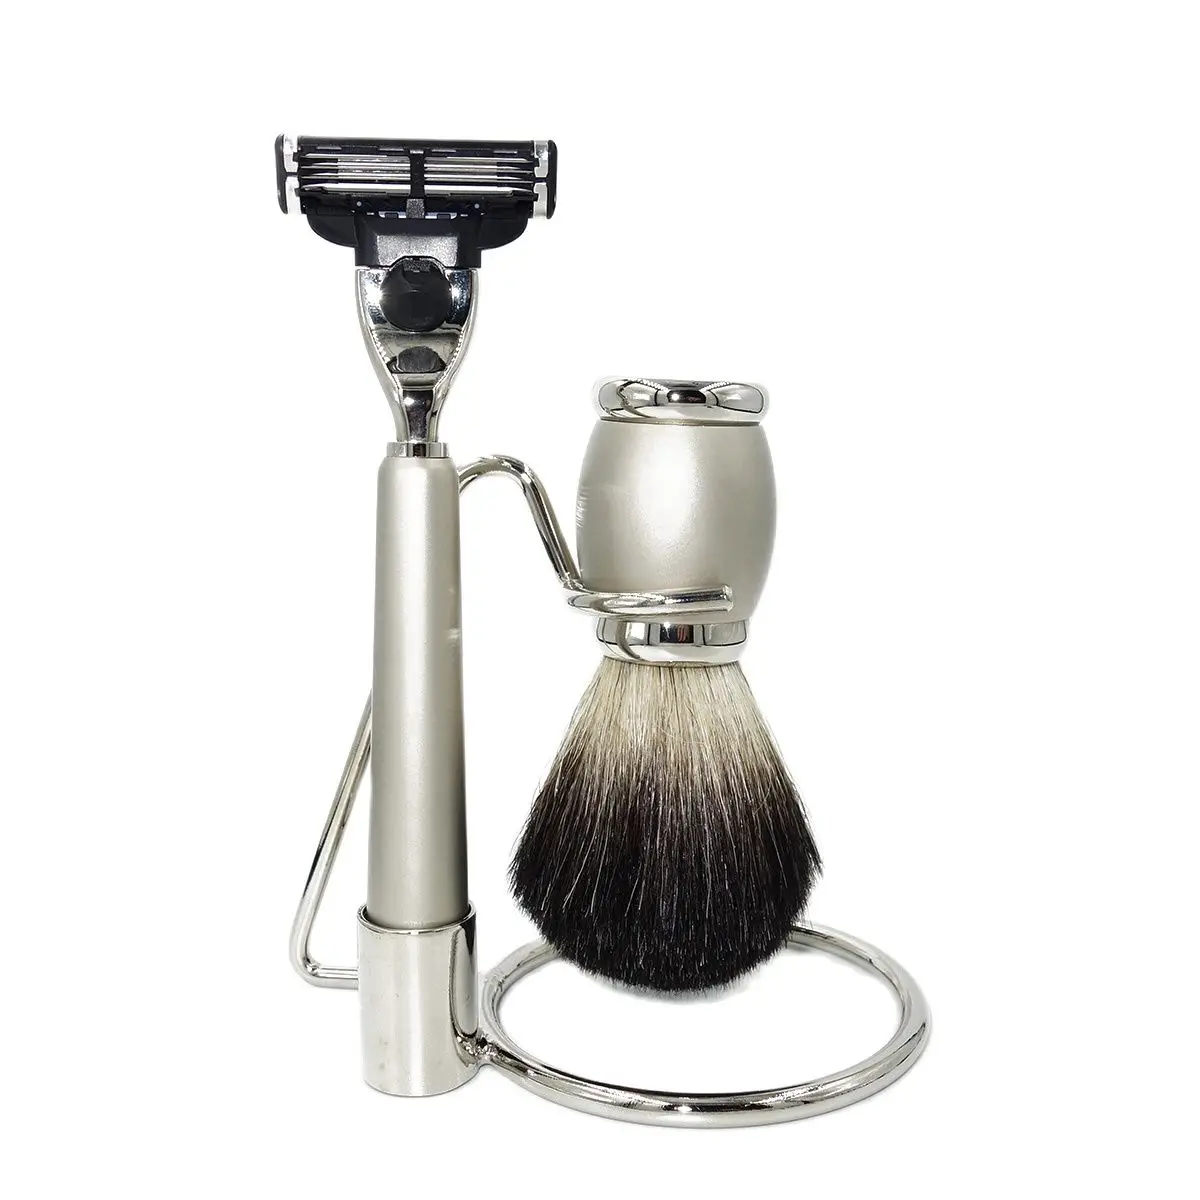 irazor-kit-de-maquinilla-de-afeitar-para-barba-de-barbero-clasico-m3-mach-3-brocha-de-tejon-negra-juego-de-afeitado-para-hombre-accesorios-de-herramientas-de-aseo